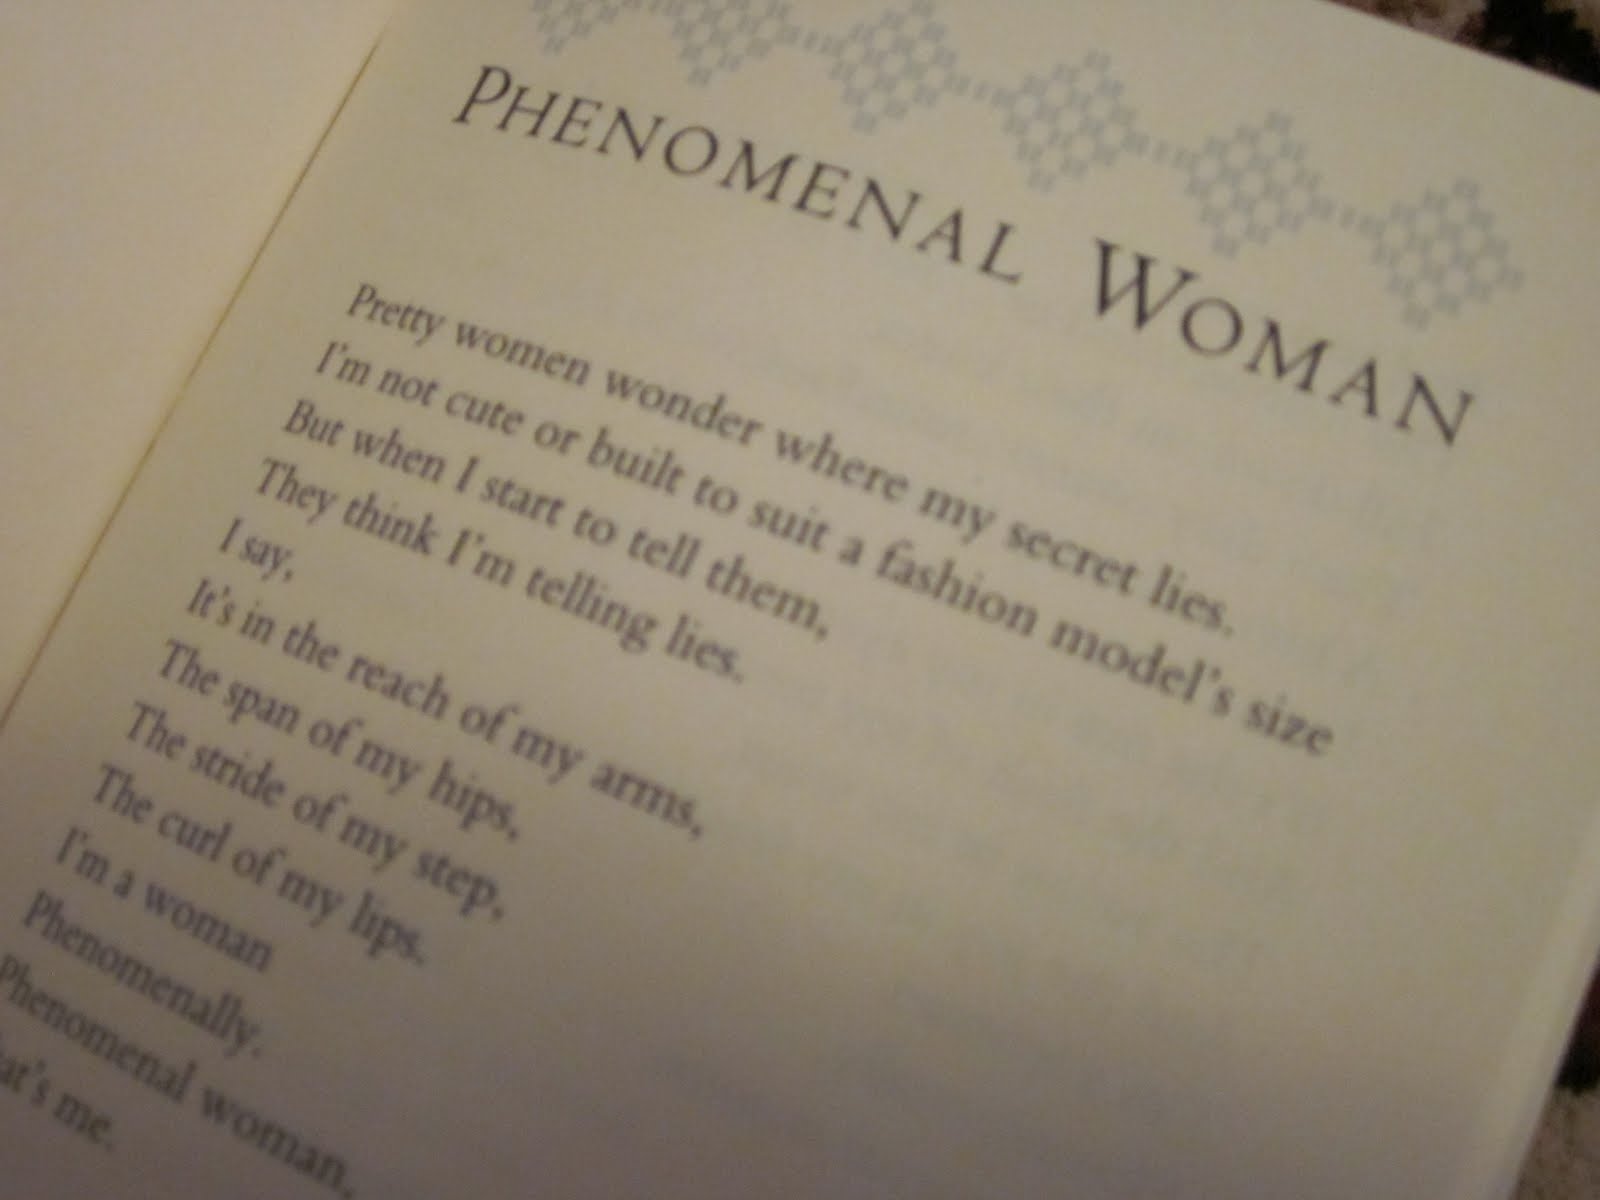 Phenomenal Woman Poem 35